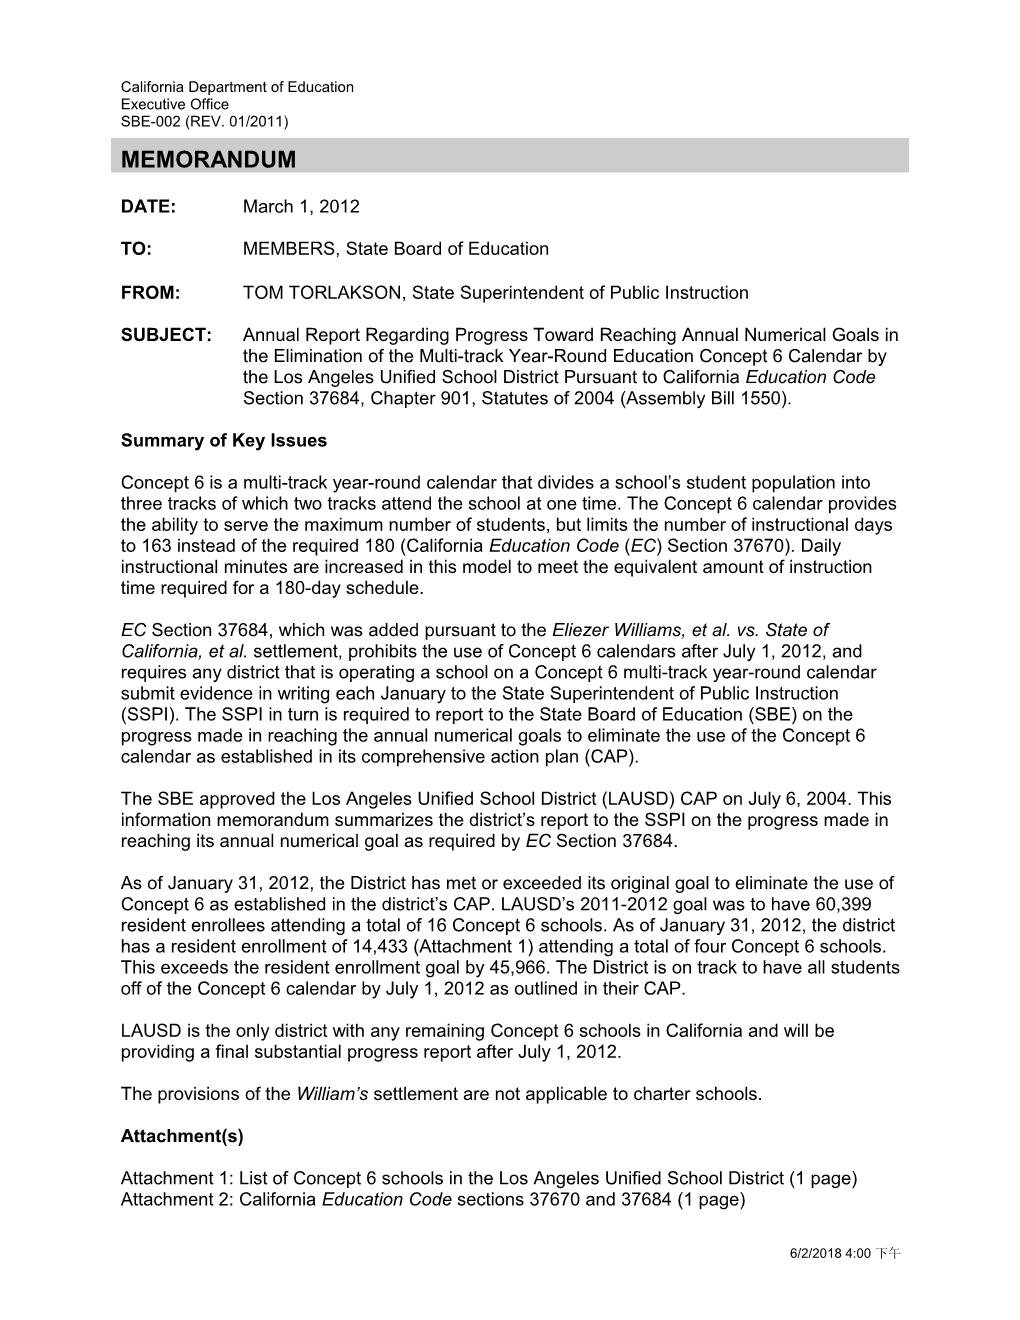 April 2012 Memorandum SFTSD Item 1 - Information Memorandum (CA State Board of Education)